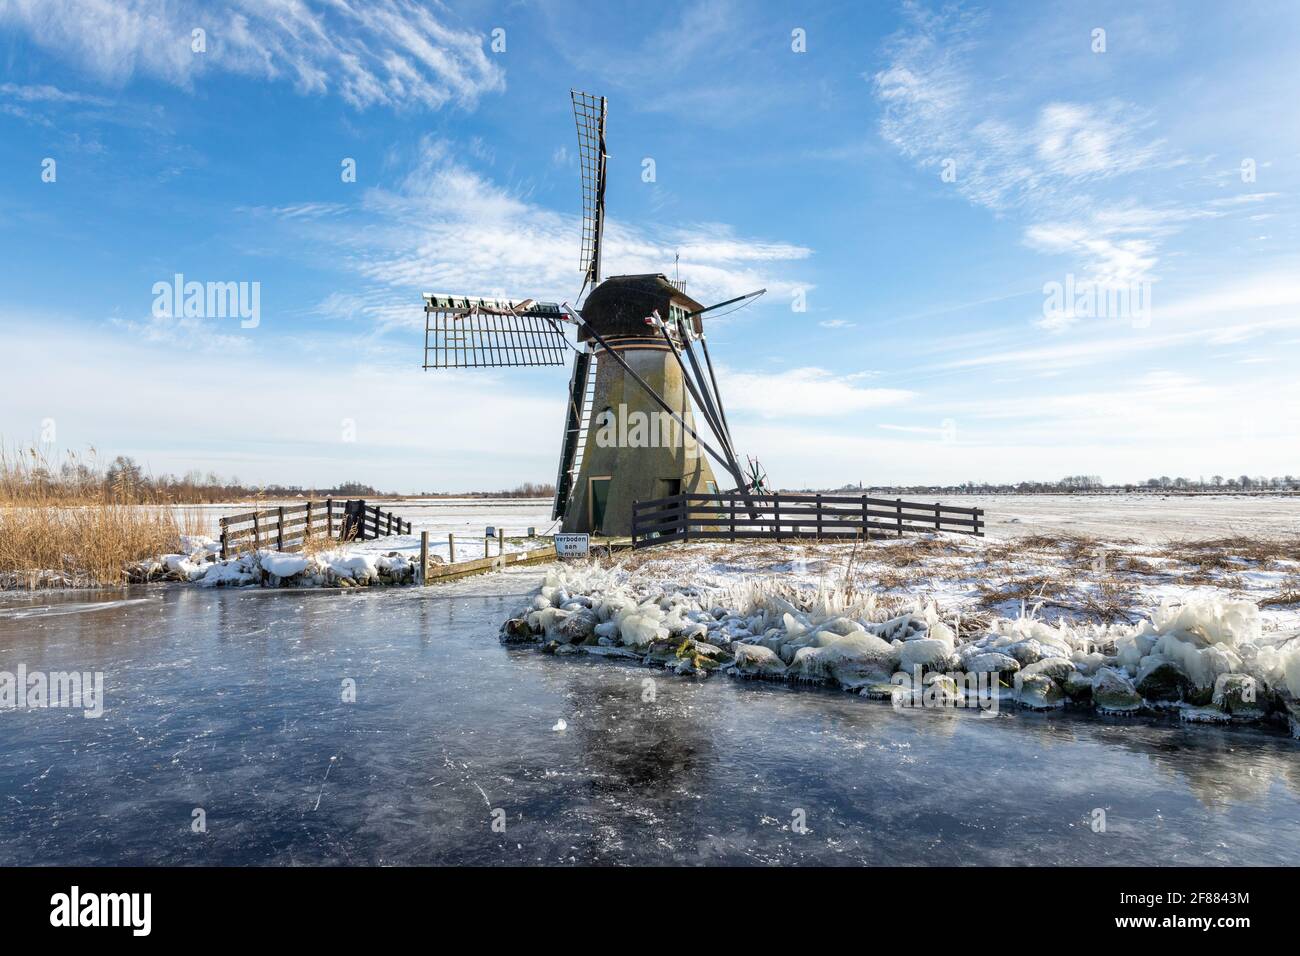 Mulino a vento storico 'de Kok' sulle rive del kogjespolder sul lago ghiacciato Kagerplassen nel comune di Warmond nei Paesi Bassi. Foto Stock